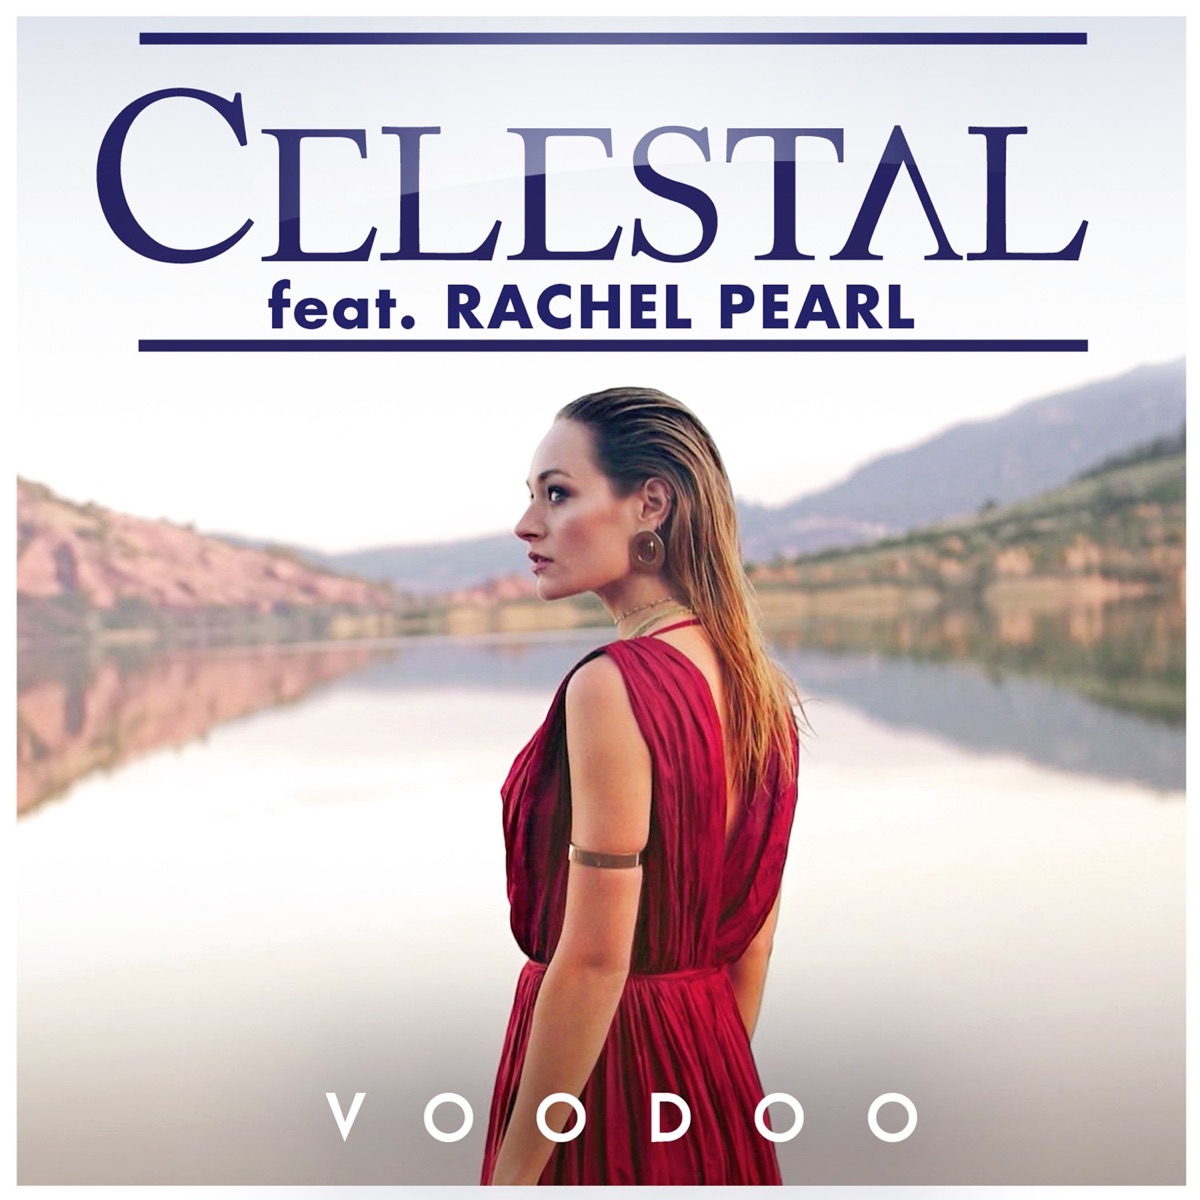 Celestal ft. featuring Rachel Pearl Voodoo cover artwork